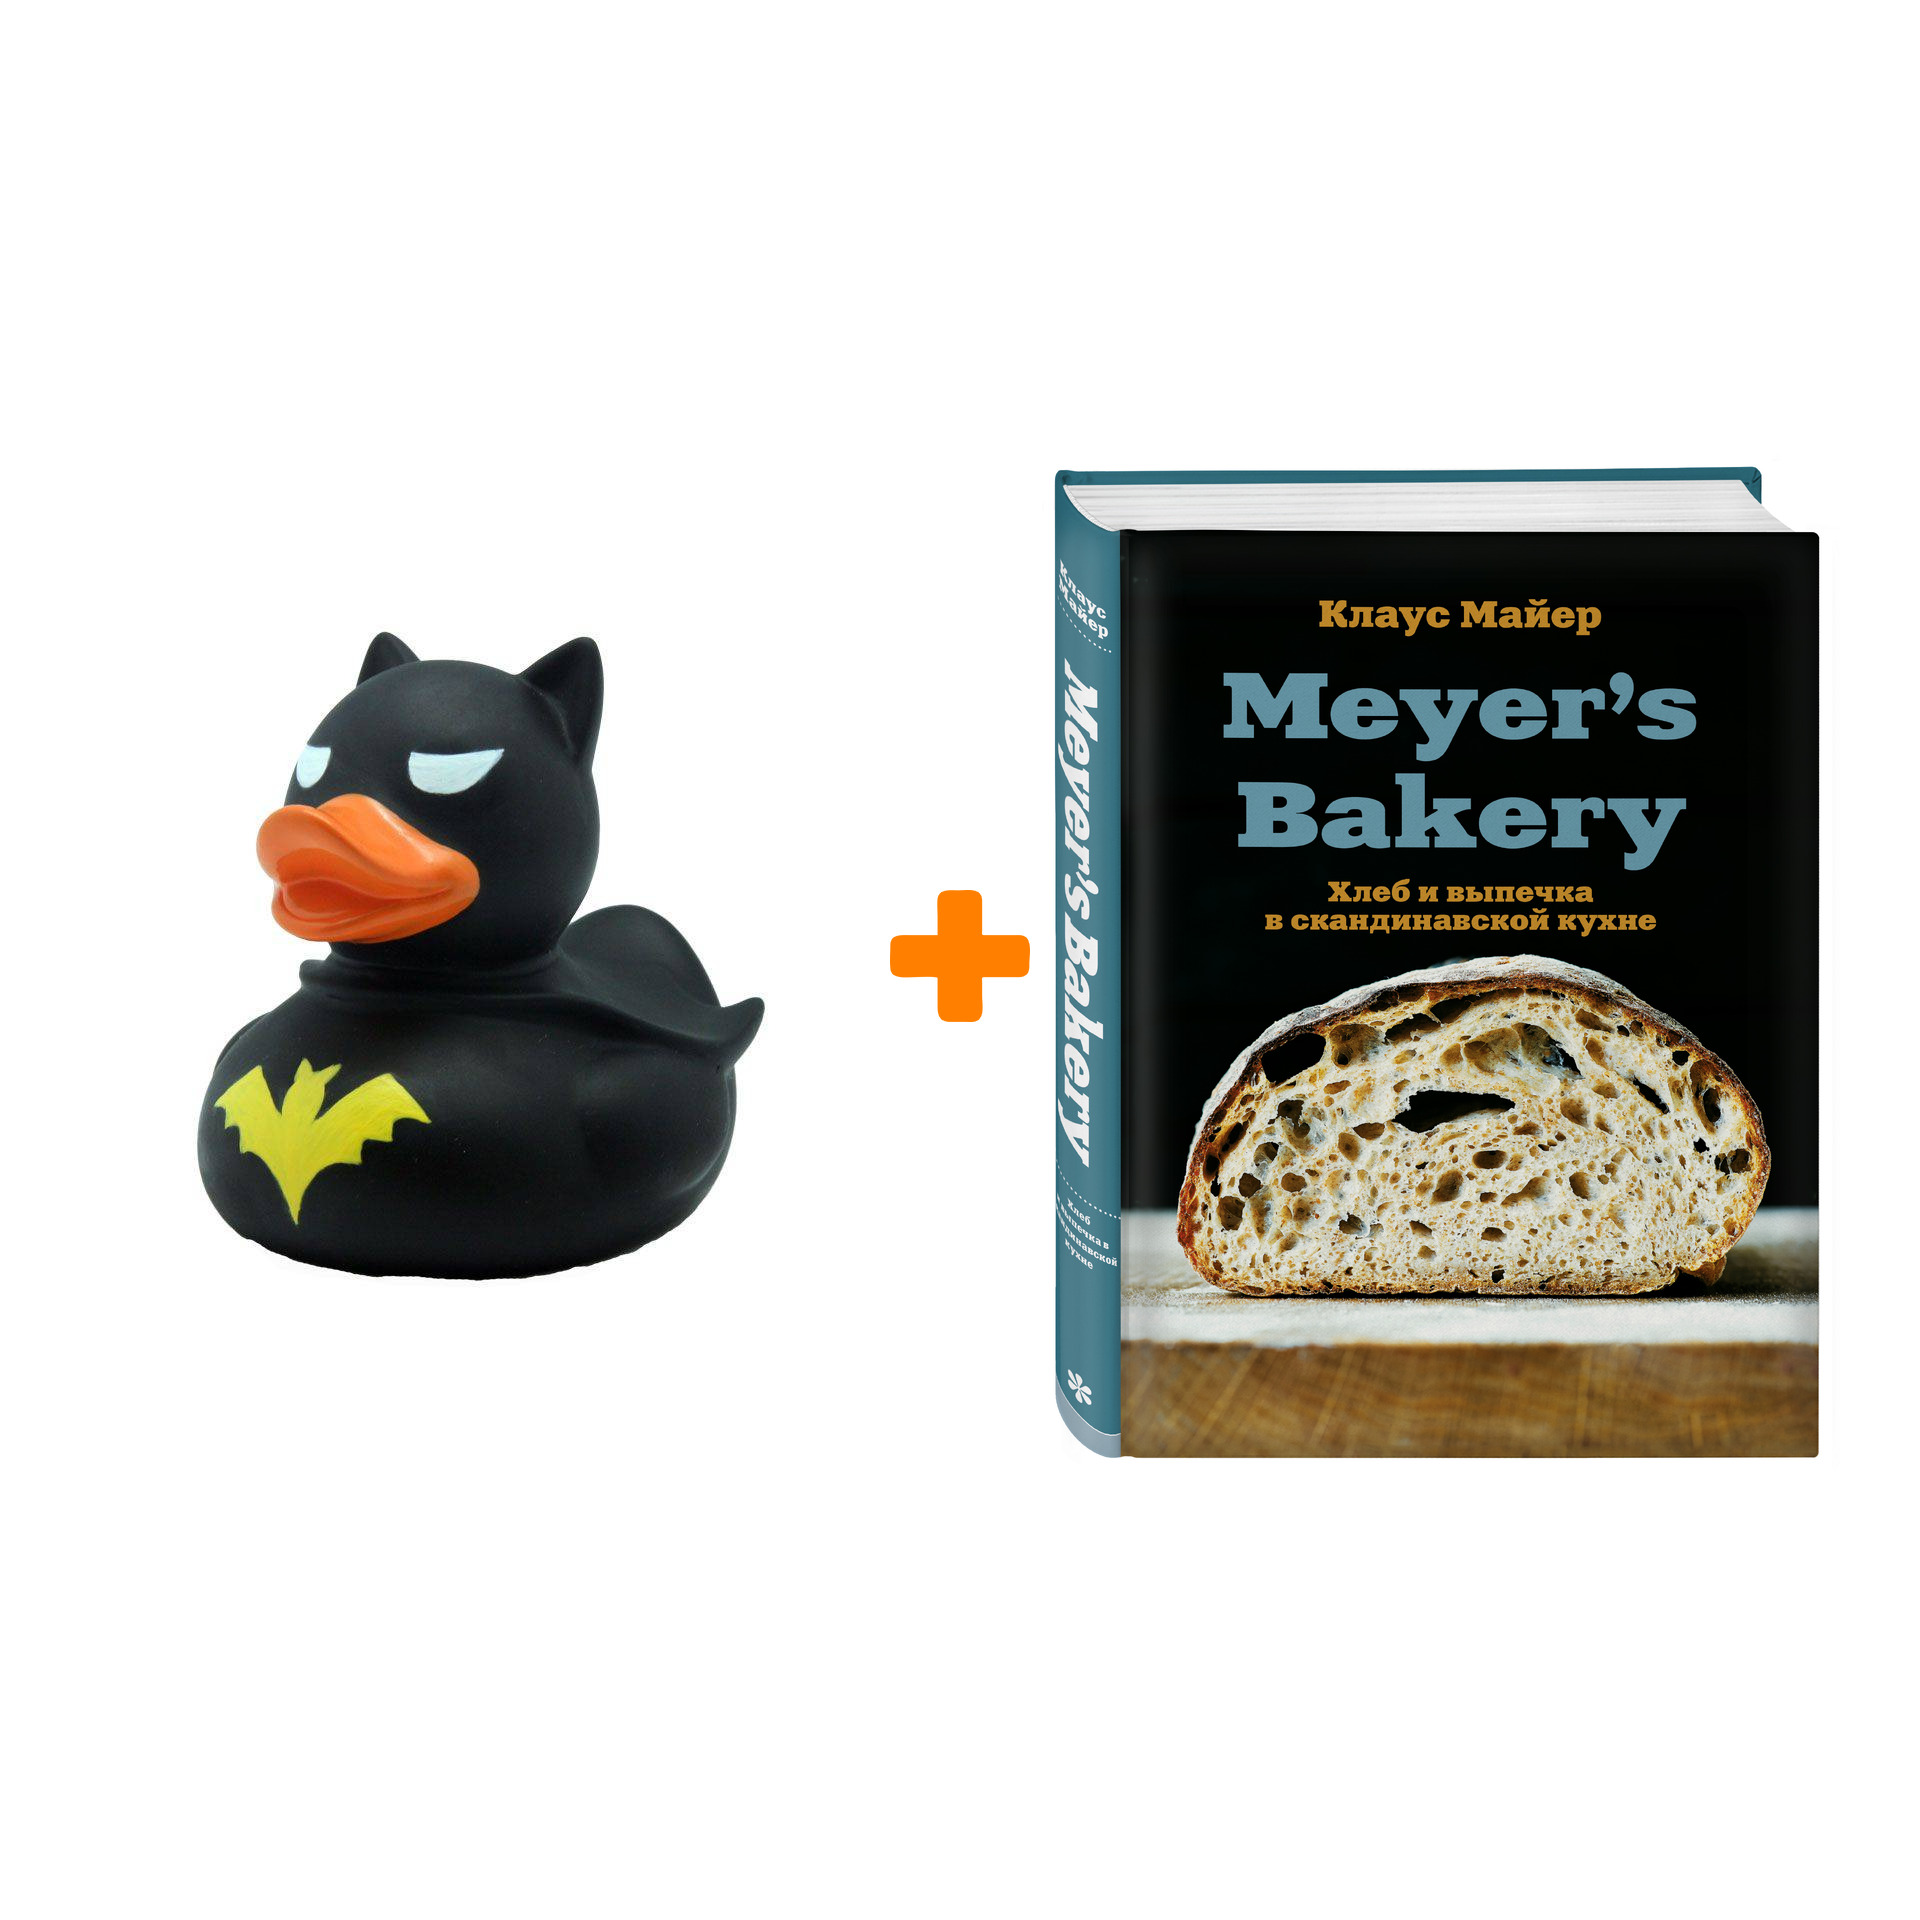  Набор Meyer’s Bakery. Хлеб и выпечка в скандинавской кухне. Клаус Майер + Фигурка Уточка Тёмный герой